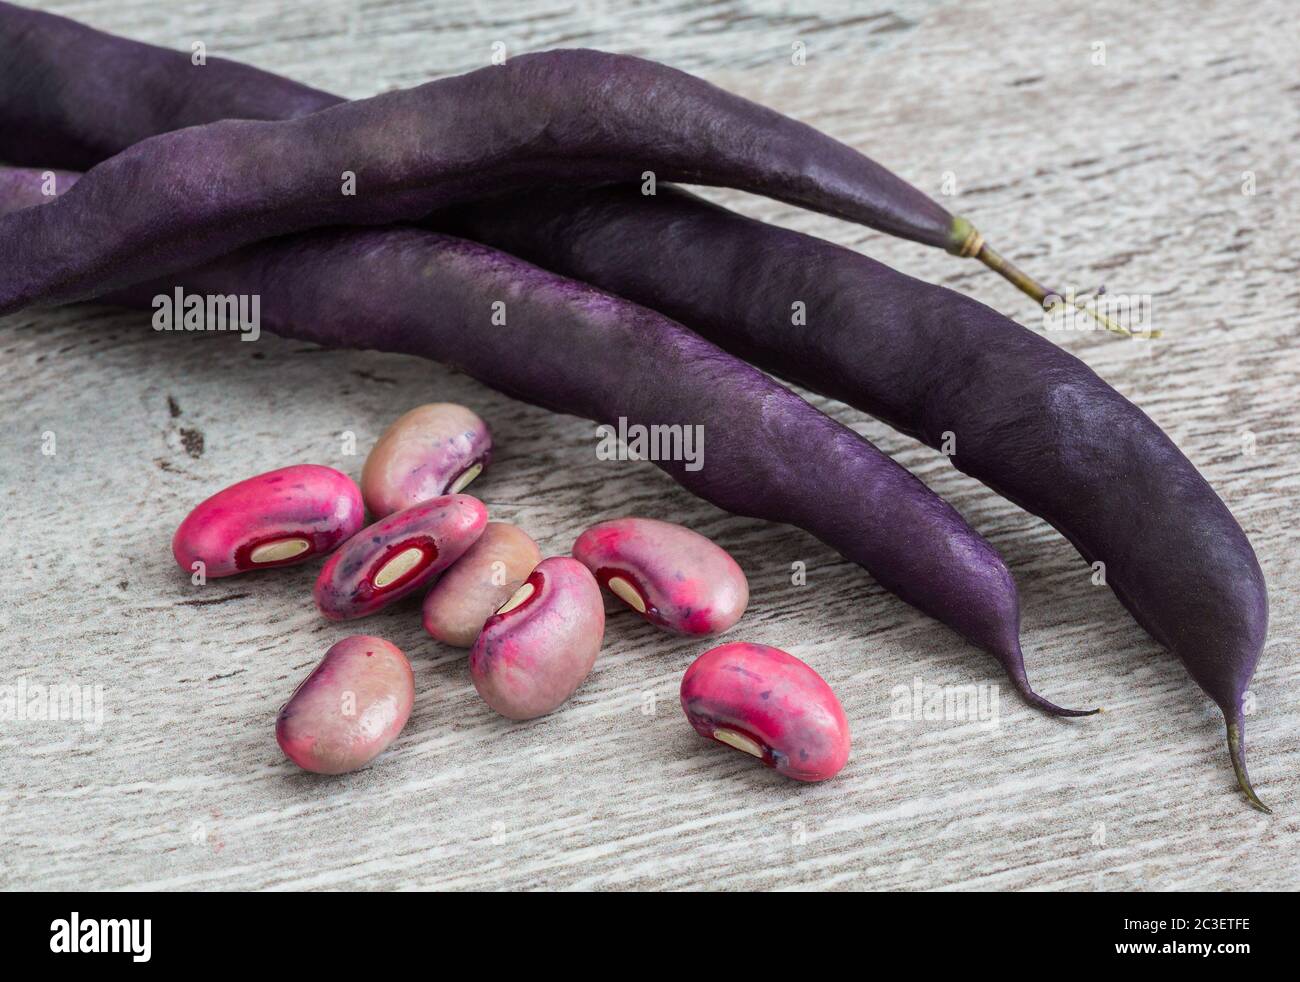 Gousses de haricots violets Banque D'Images